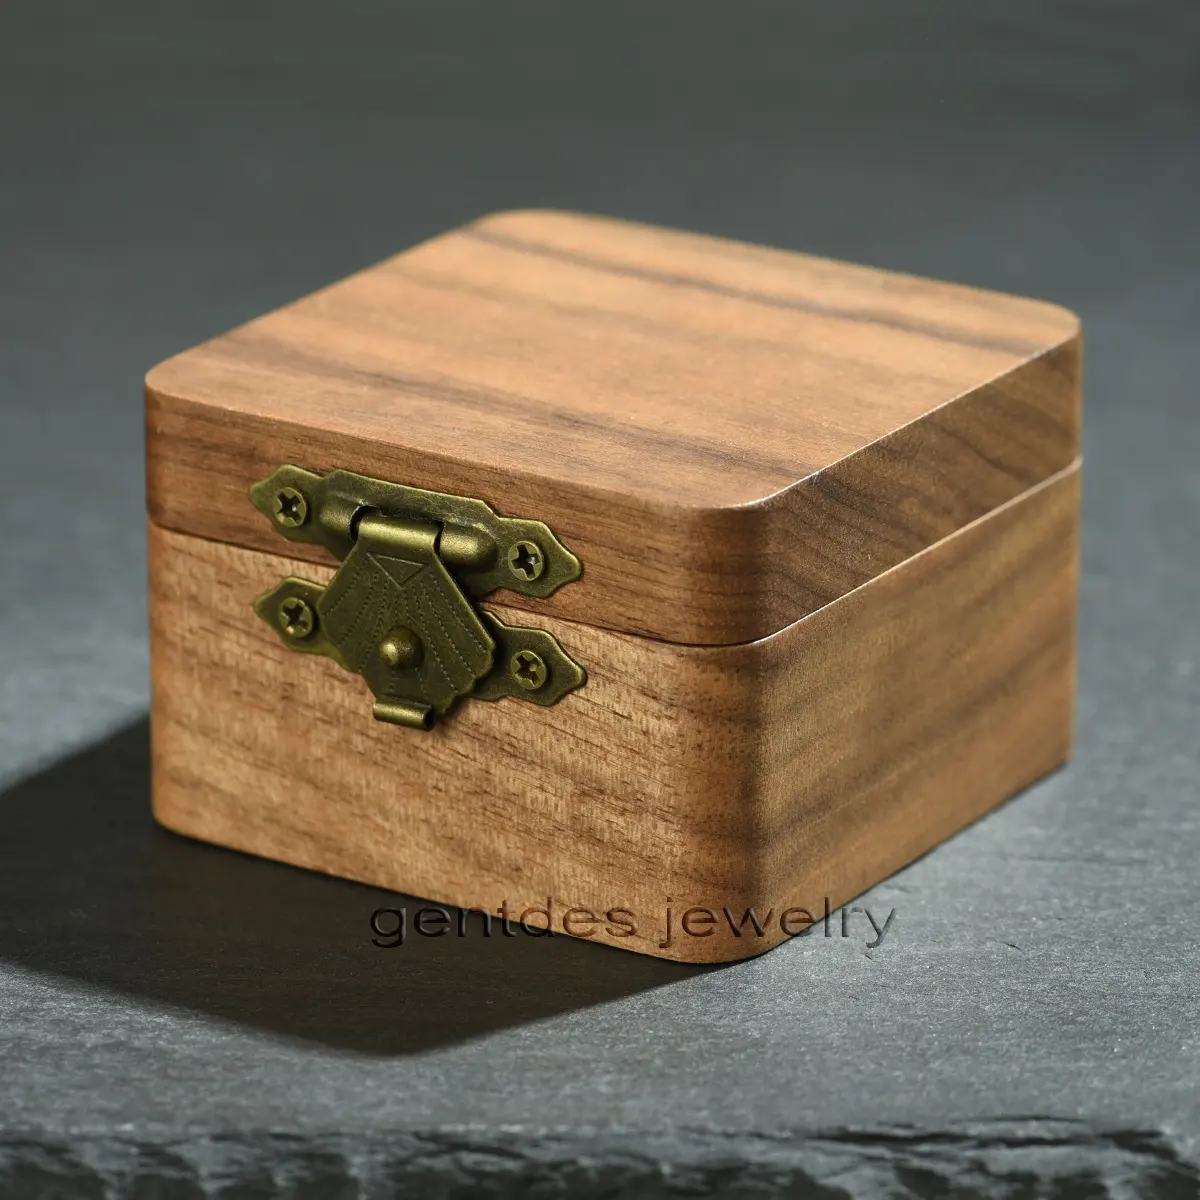 Gentdes ювелирные изделия на заказ логотип Koa деревянное обручальное кольцо коробка деревянное кольцо коробка для пары колец